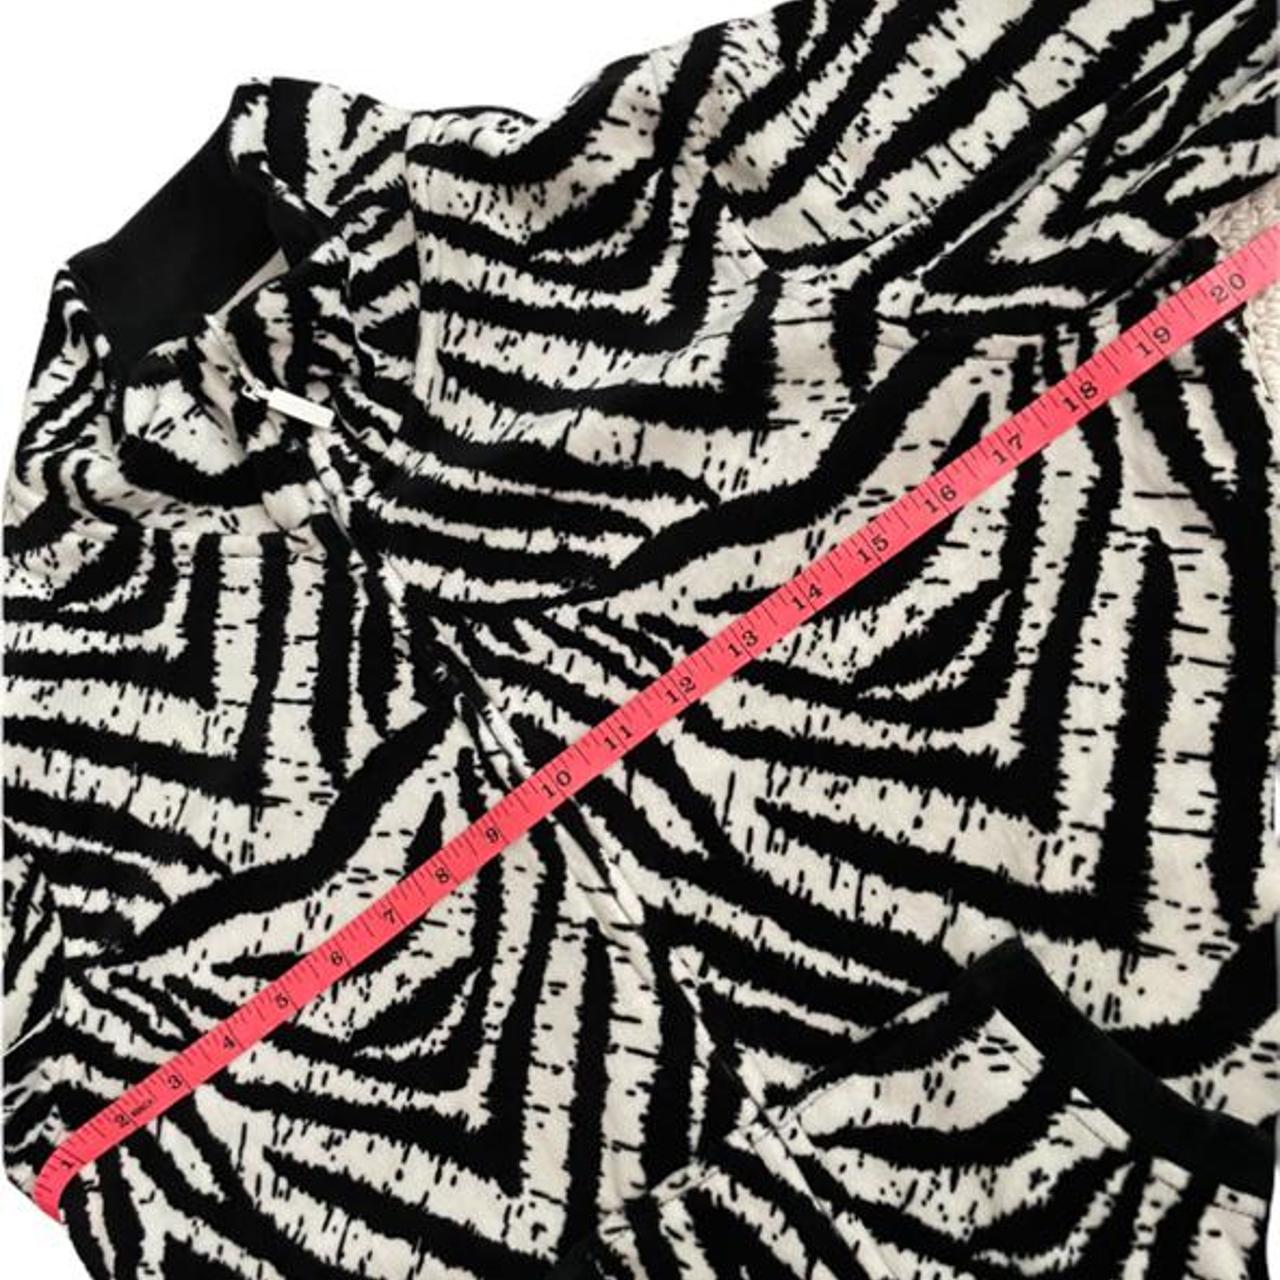 Product Image 3 - zebra print jacket with black